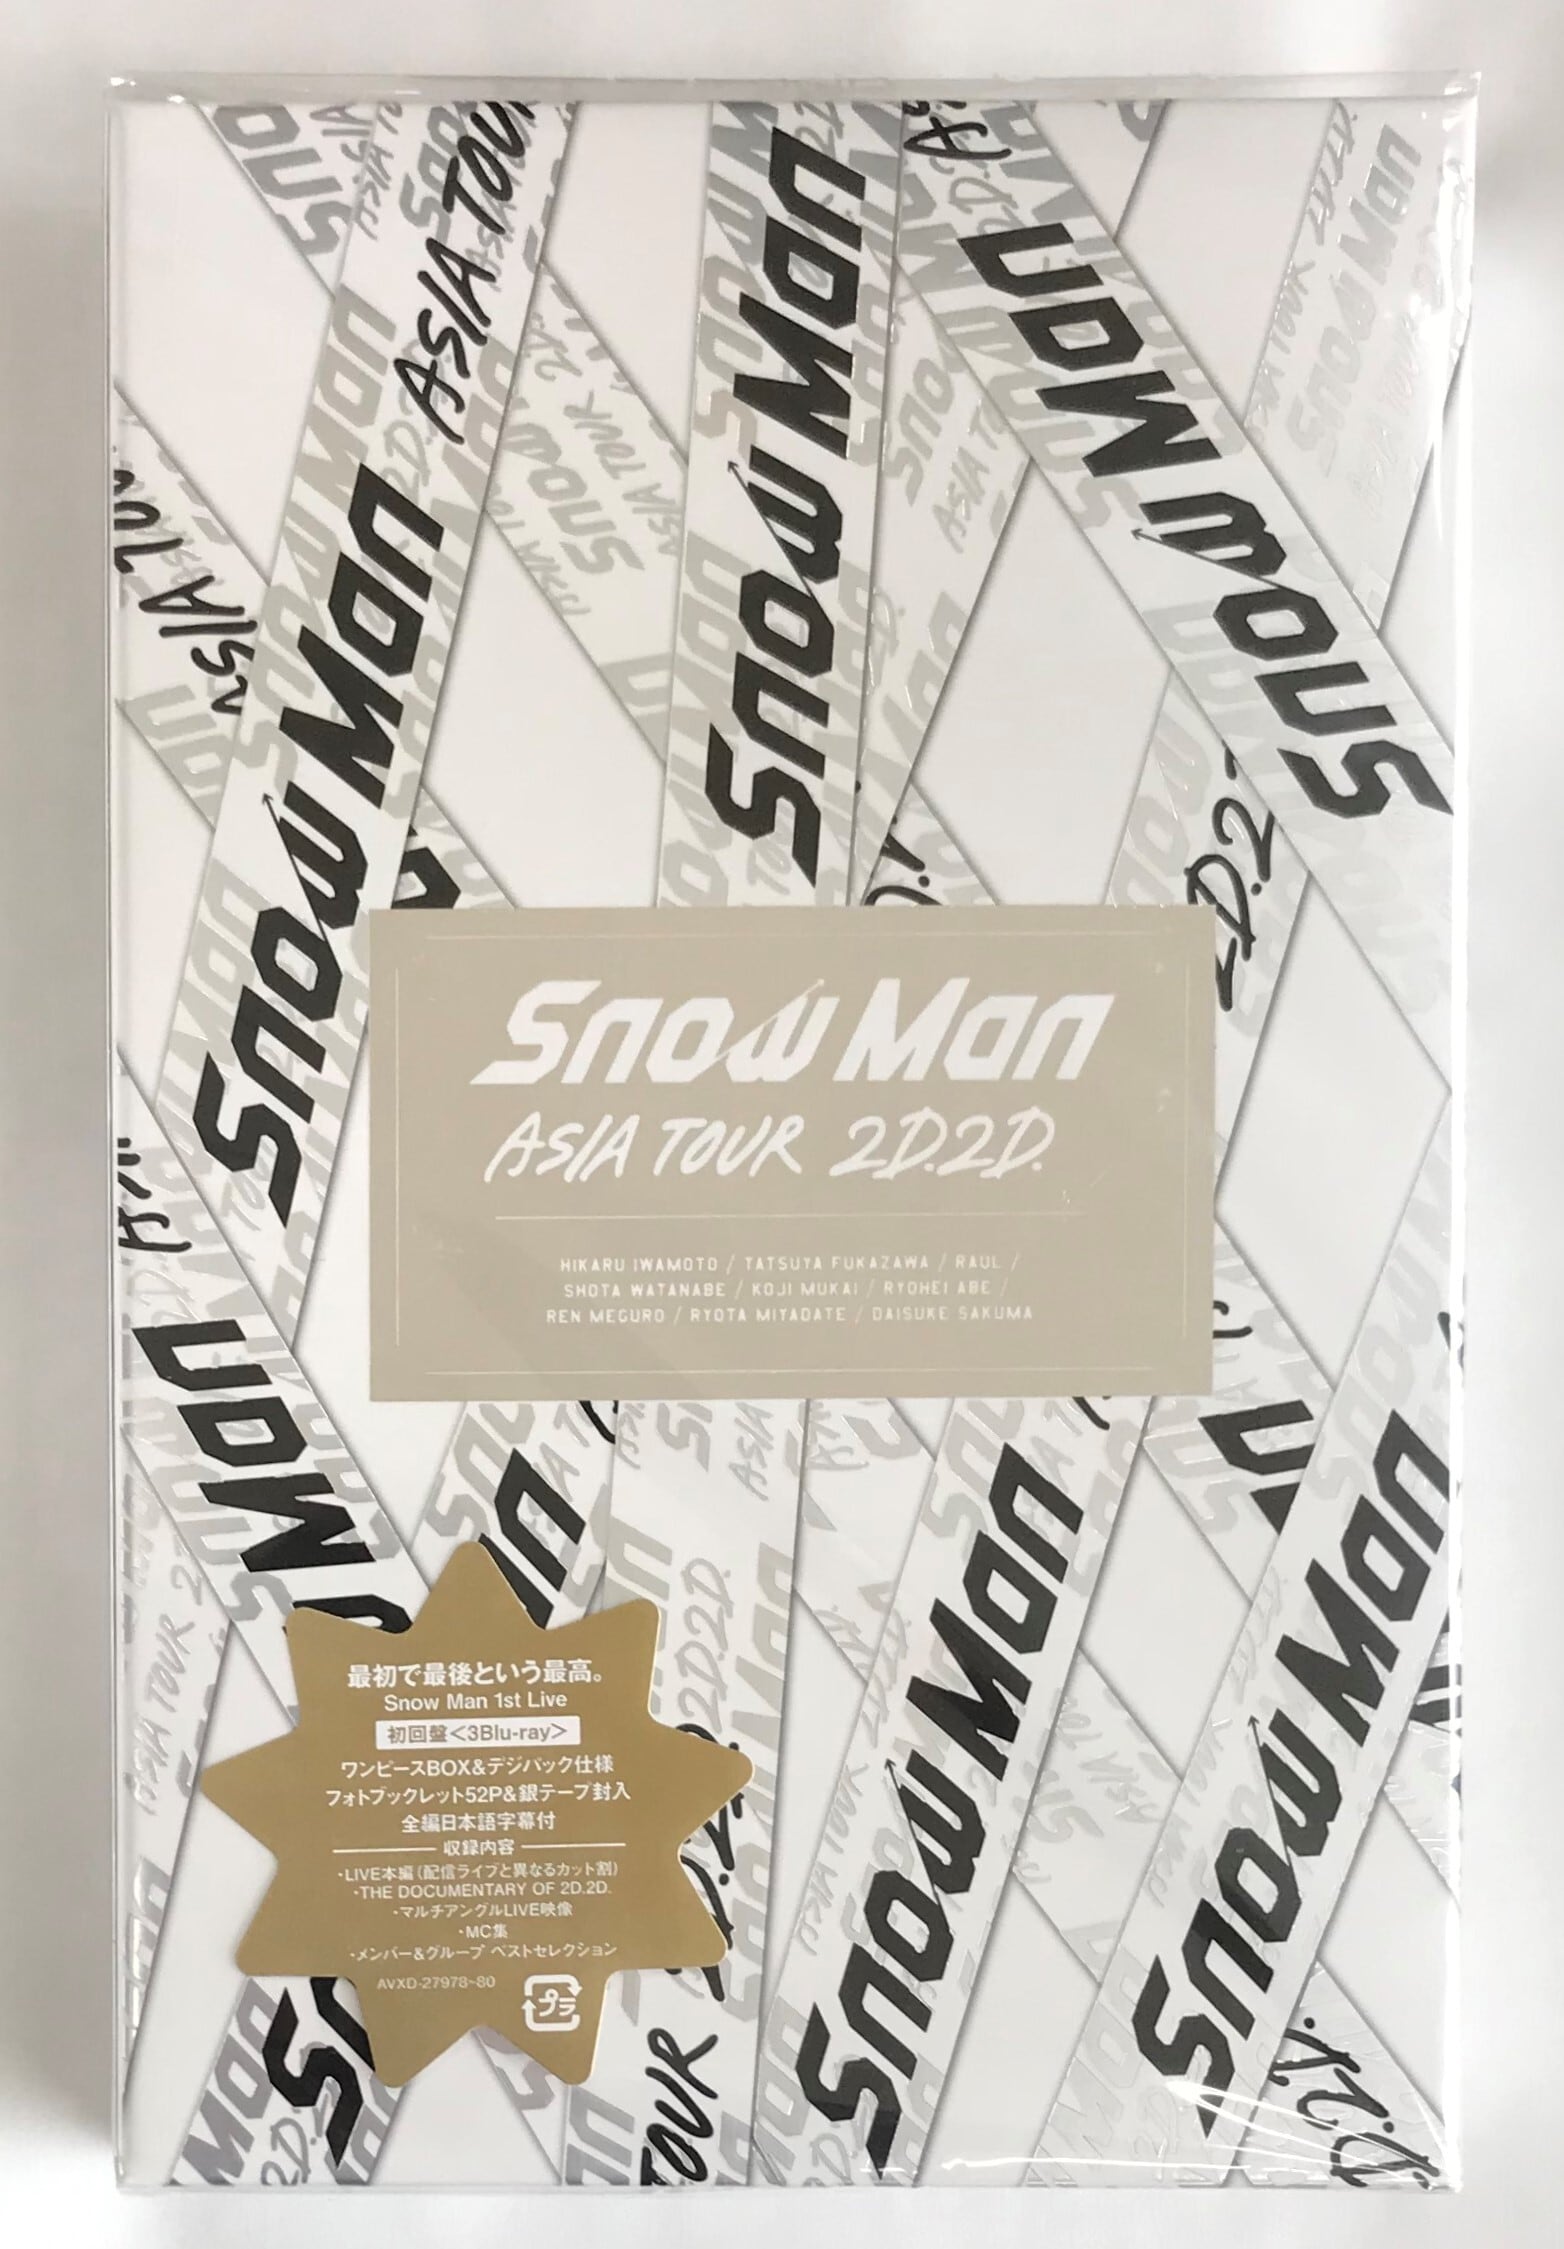 Snow　Man　ASIA　TOUR　2D．2D． Blu-ray